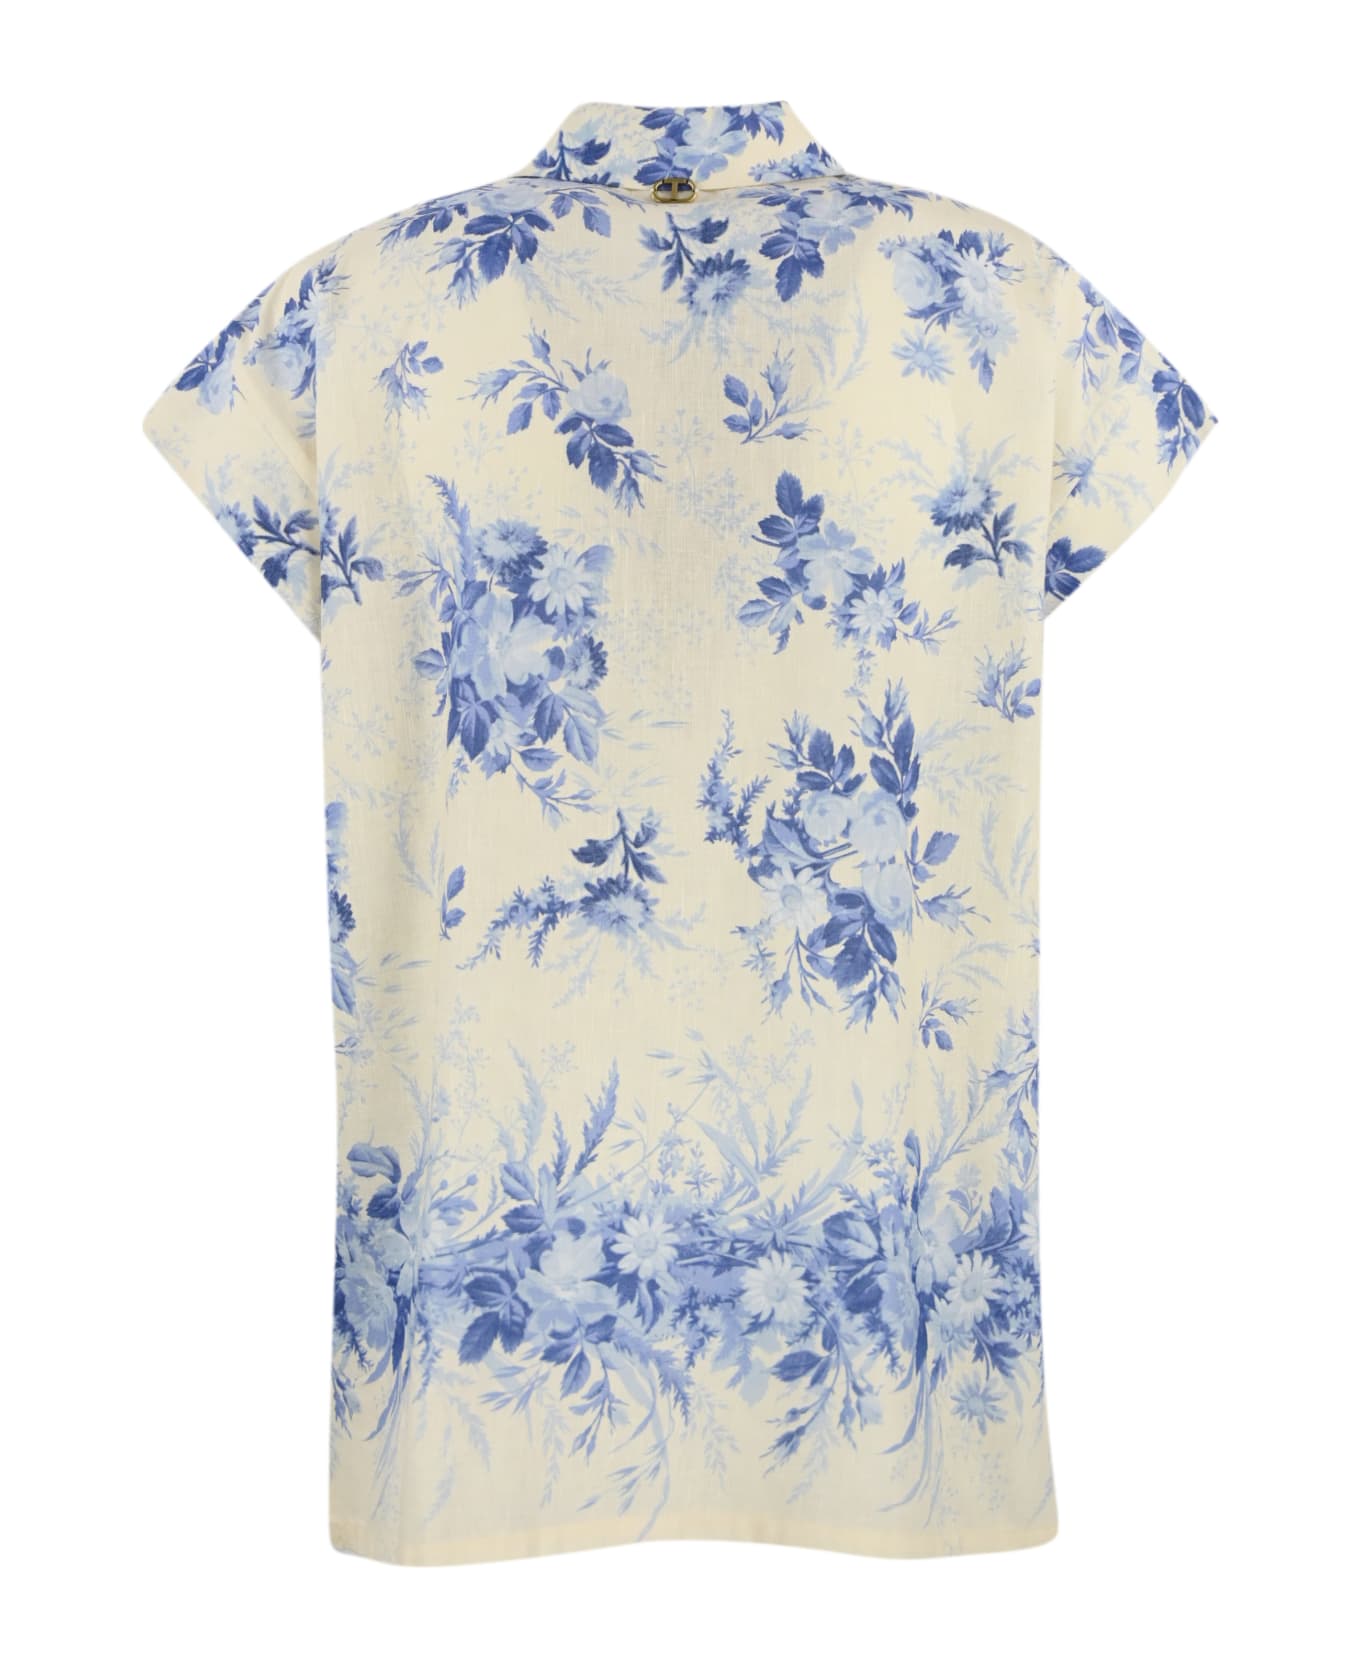 TwinSet Floral Print Linen Blend Shirt - St.toile de jouy シャツ